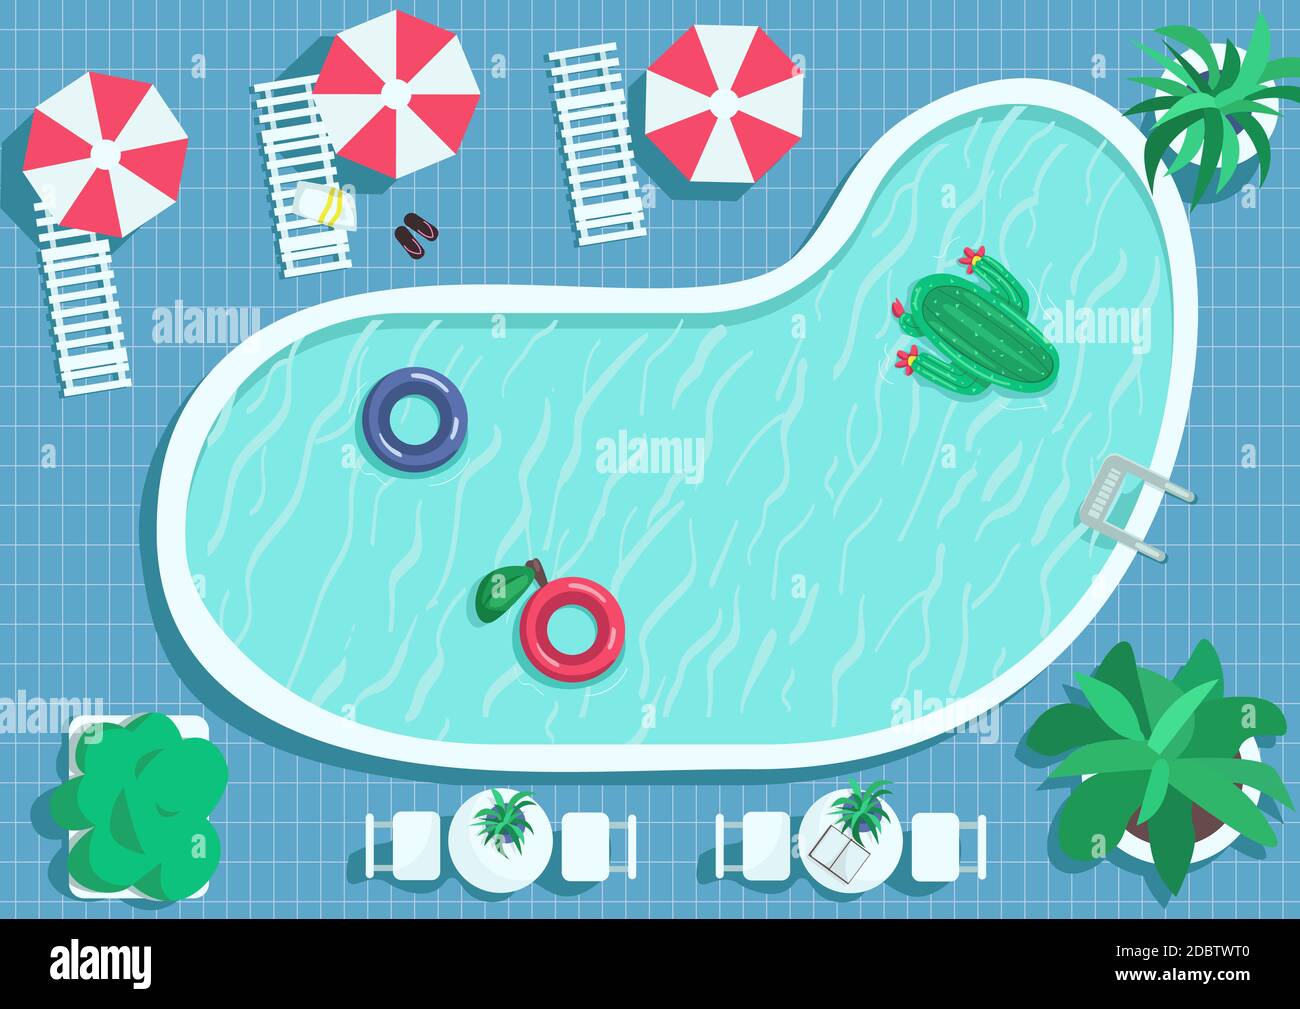 Draufsicht Runde Pool flache Farbe Vektor Illustration. Fliesenboden um den  Wasserfleck. Aufblasbarer Kaktus zum Schwimmen. Pool 2D Cartoon Landschaft  mit l Stockfotografie - Alamy